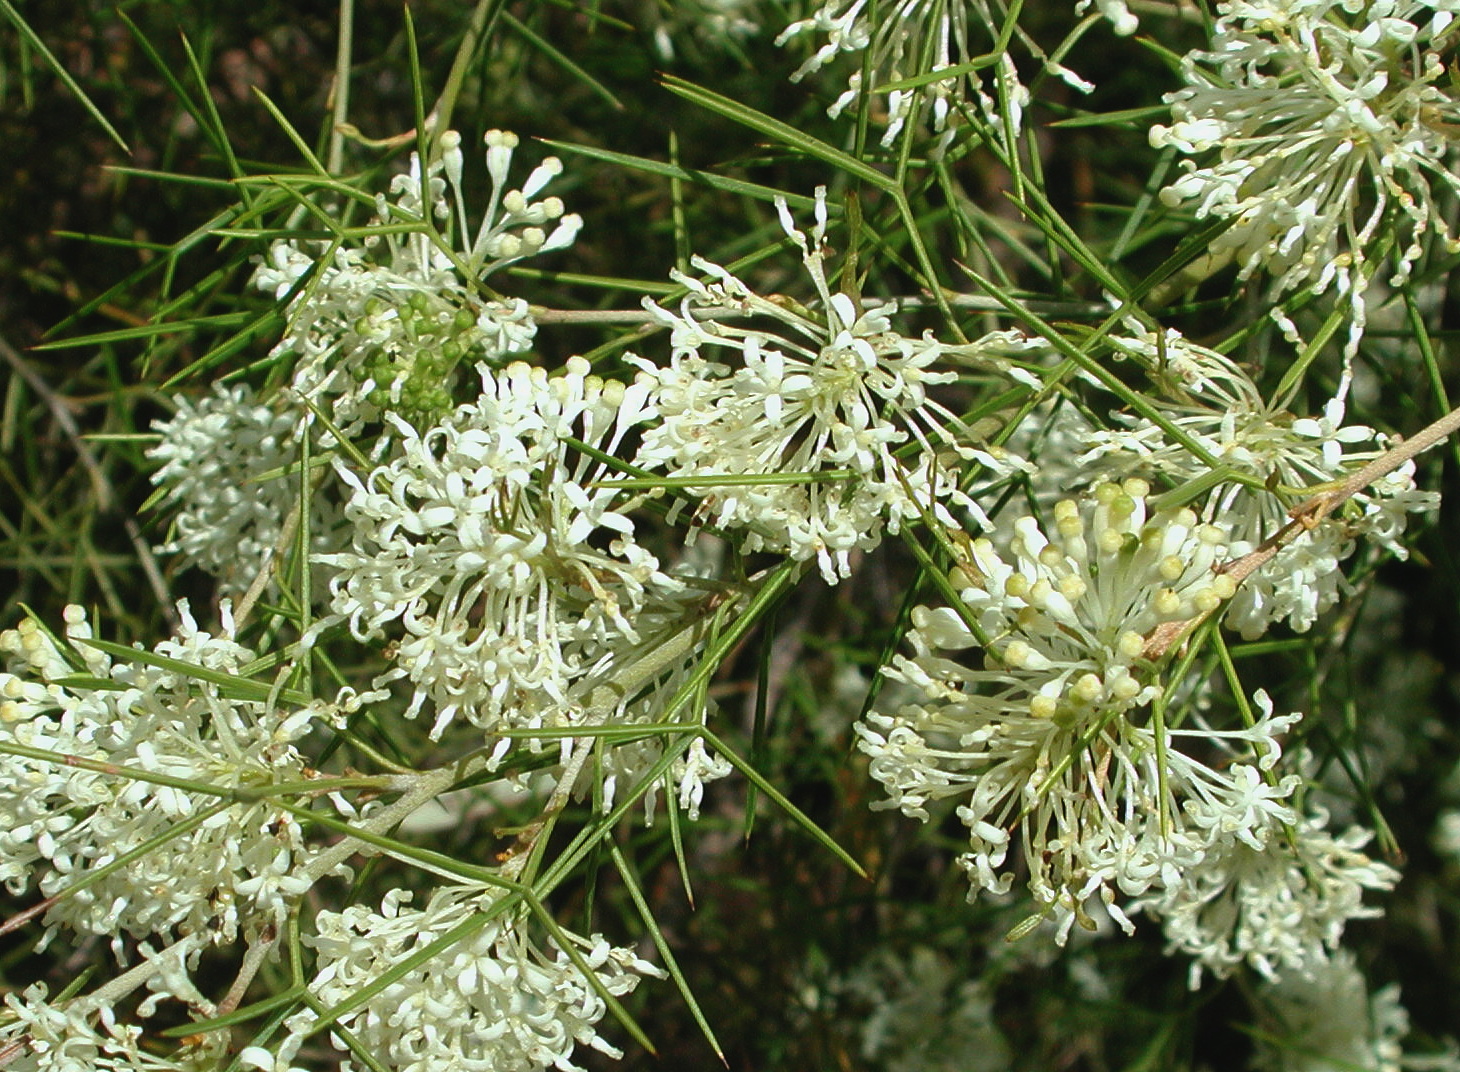 Grevillea anethifolia